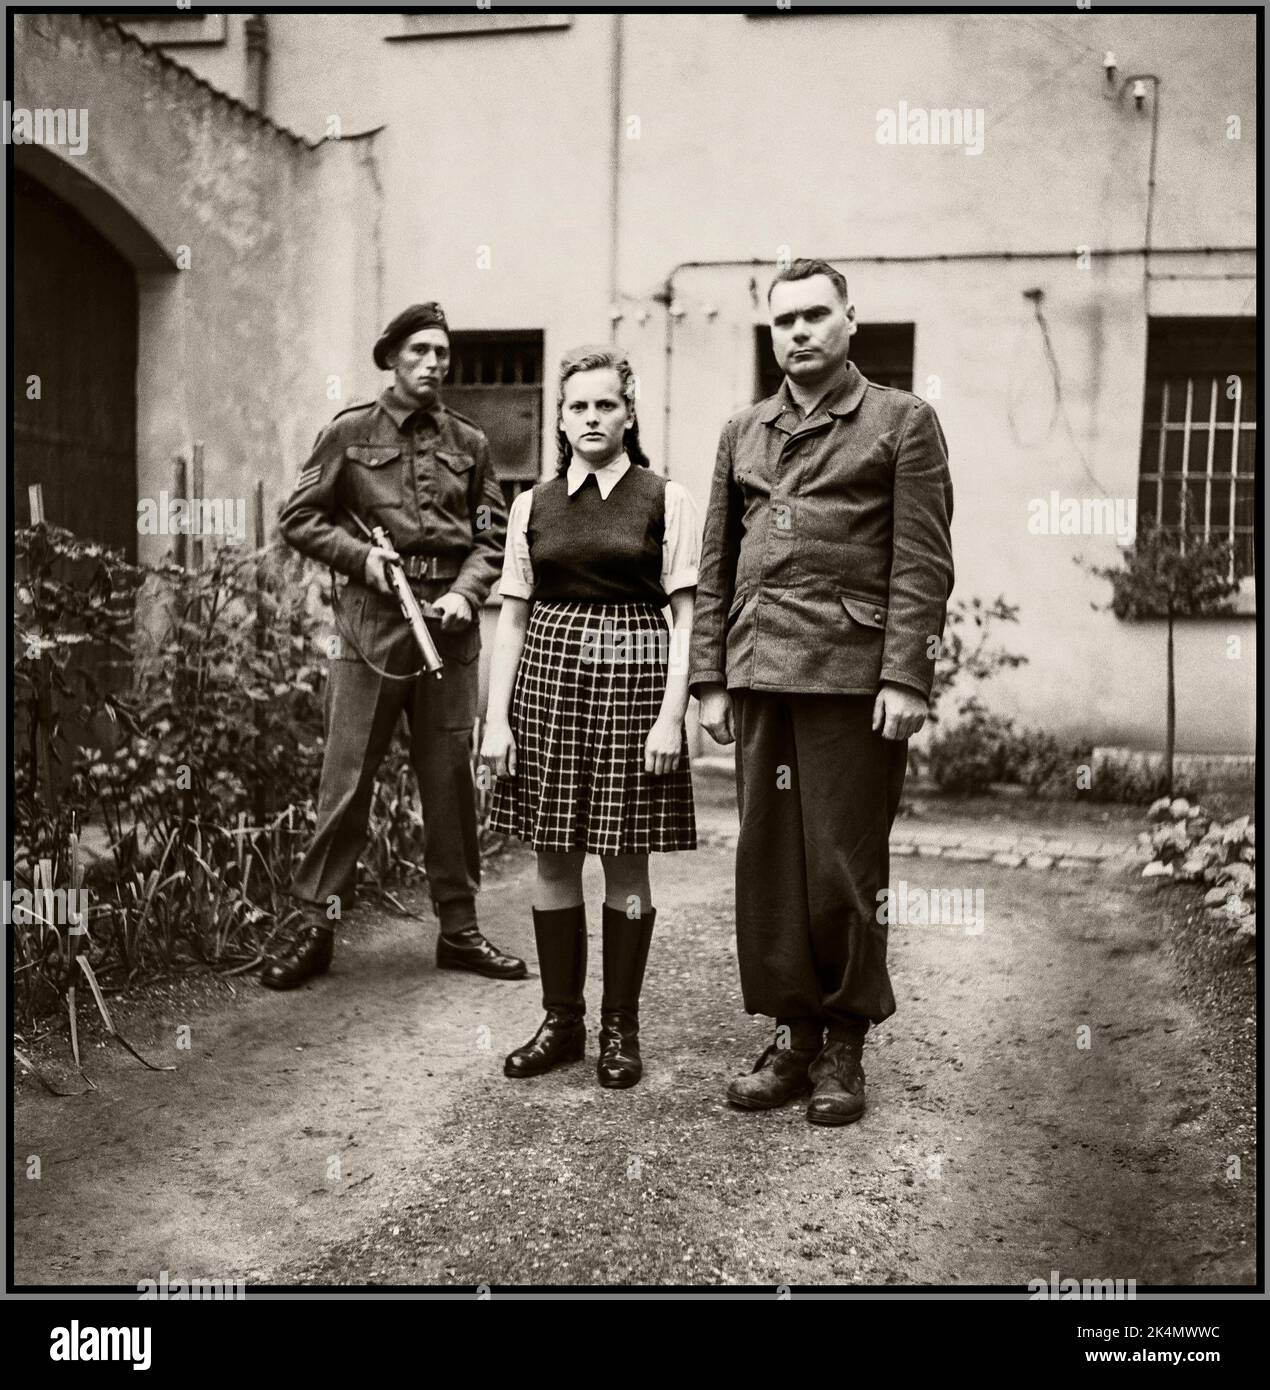 IRMA GRESE GARDE NAZIE DU CAMP DE CONCENTRATION (à gauche) Irma Ilse Ida Grese (7 octobre 1923 – 13 décembre 1945) est une garde nazie du camp de concentration de Ravensbrück et Auschwitz, et est directrice de la section féminine de Bergen-Belsen. Avec Joseph Kramer BÊTE DE BELSEN Hauptsturmführer et le commandant d'Auschwitz-Birkenau et des camps de concentration de Bergen-Belsen. Être gardé en garde à vue par un soldat britannique. Deux fonctionnaires sadiques du camp de concentration nazi qui ont été exécutés pour leurs crimes de guerre contre l'humanité. Banque D'Images